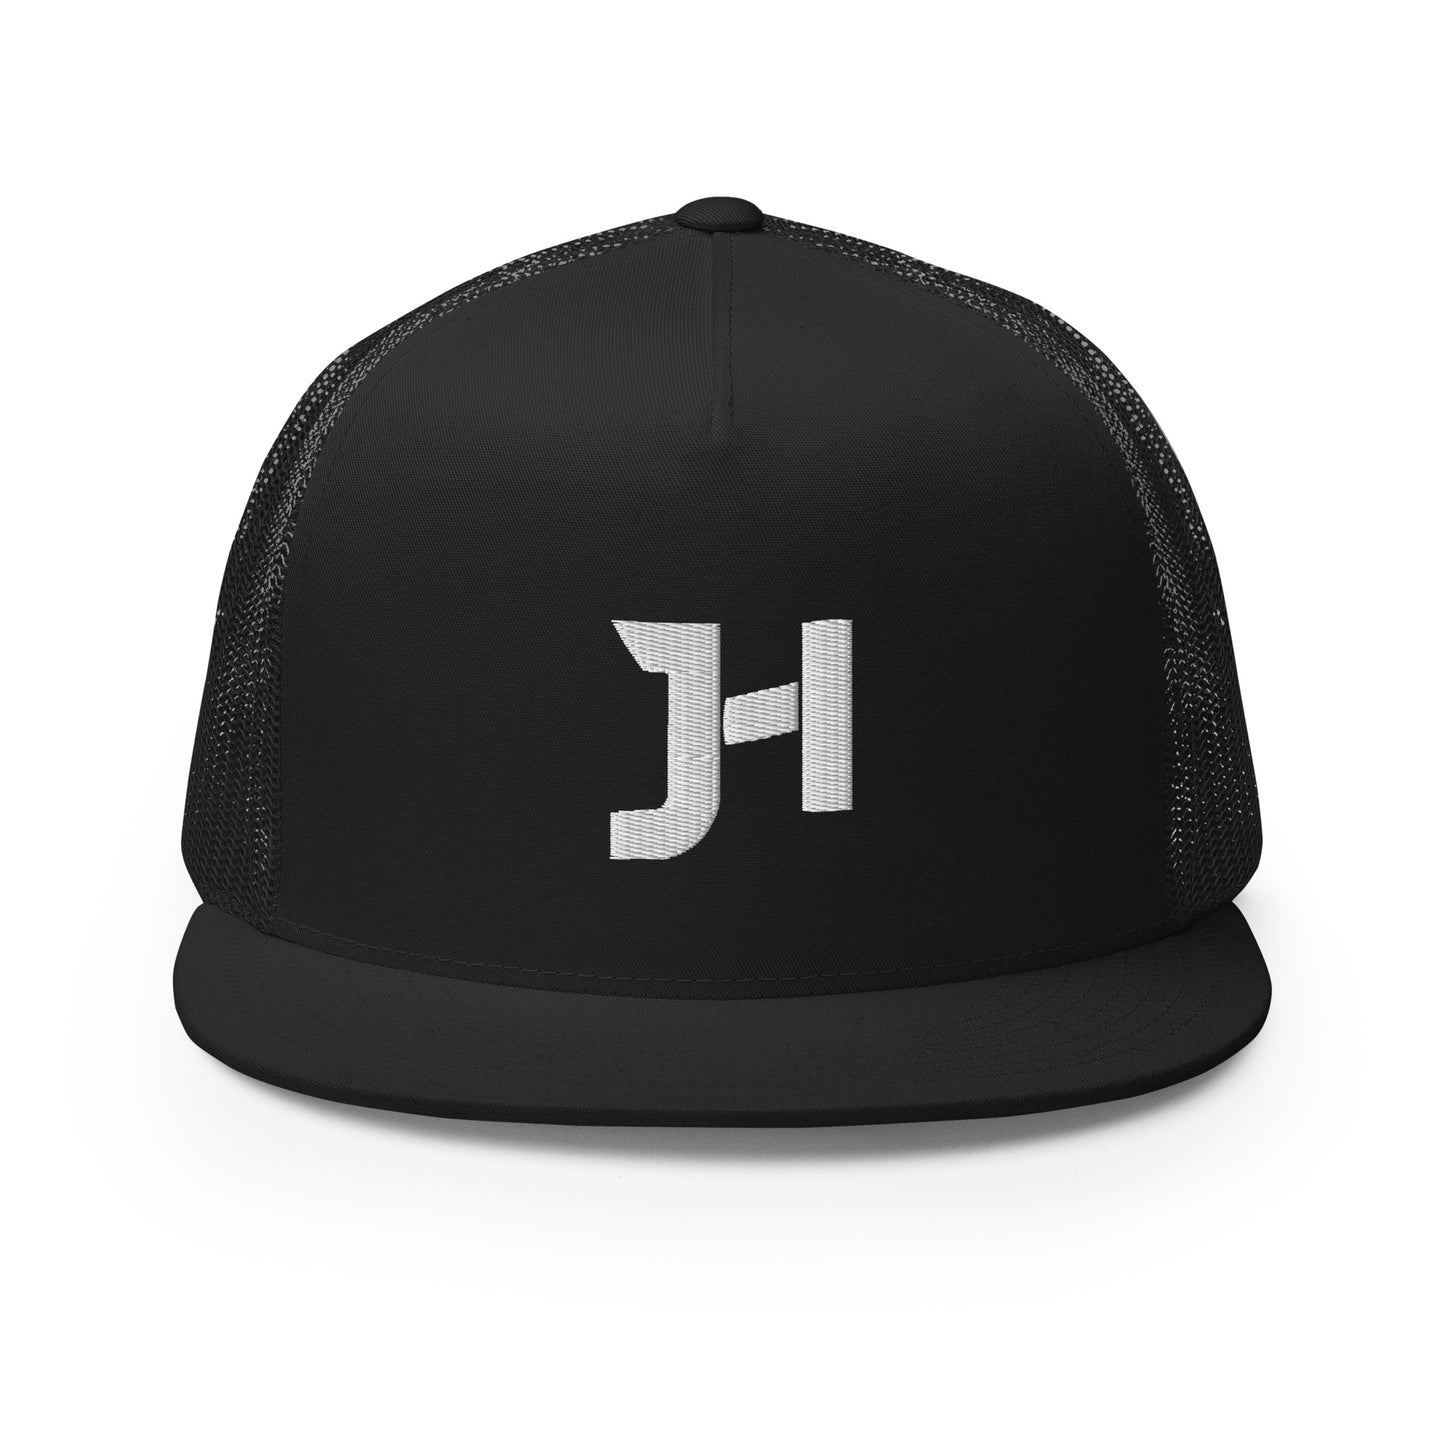 Jalen Hall "JH" Trucker Cap